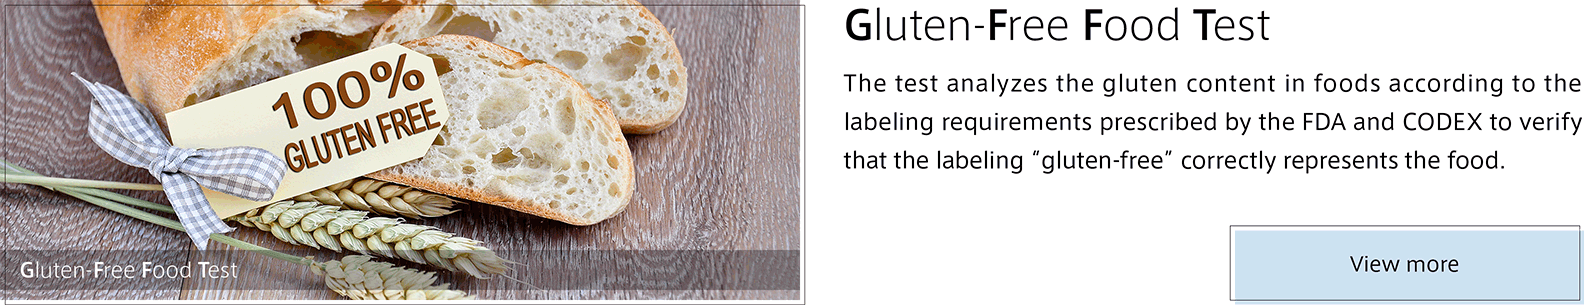 Gluten-Free Food Test